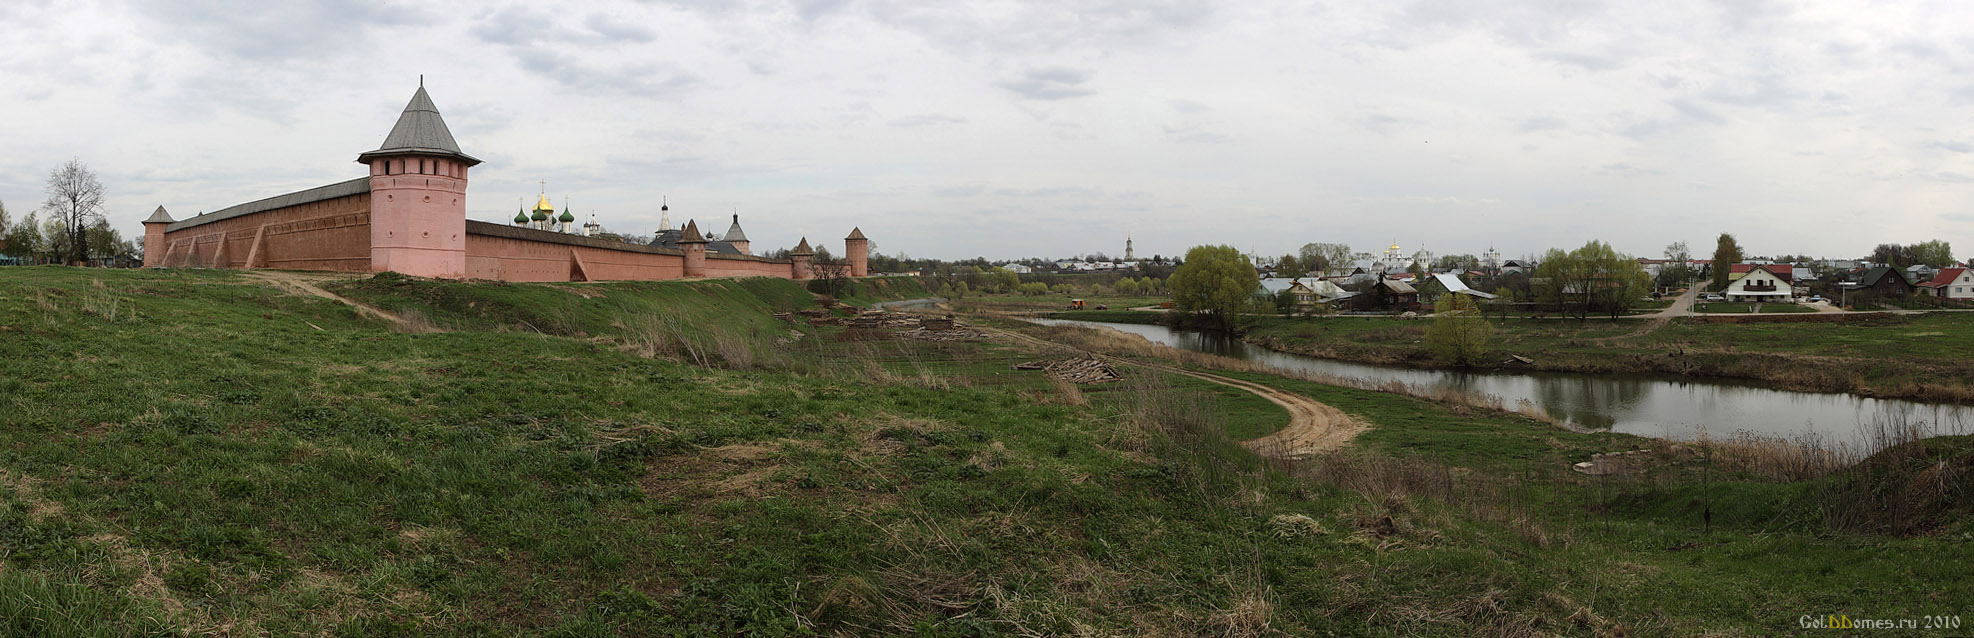 Суздаль. Панорама, вид на Спасо-Евфимиевский монастырь